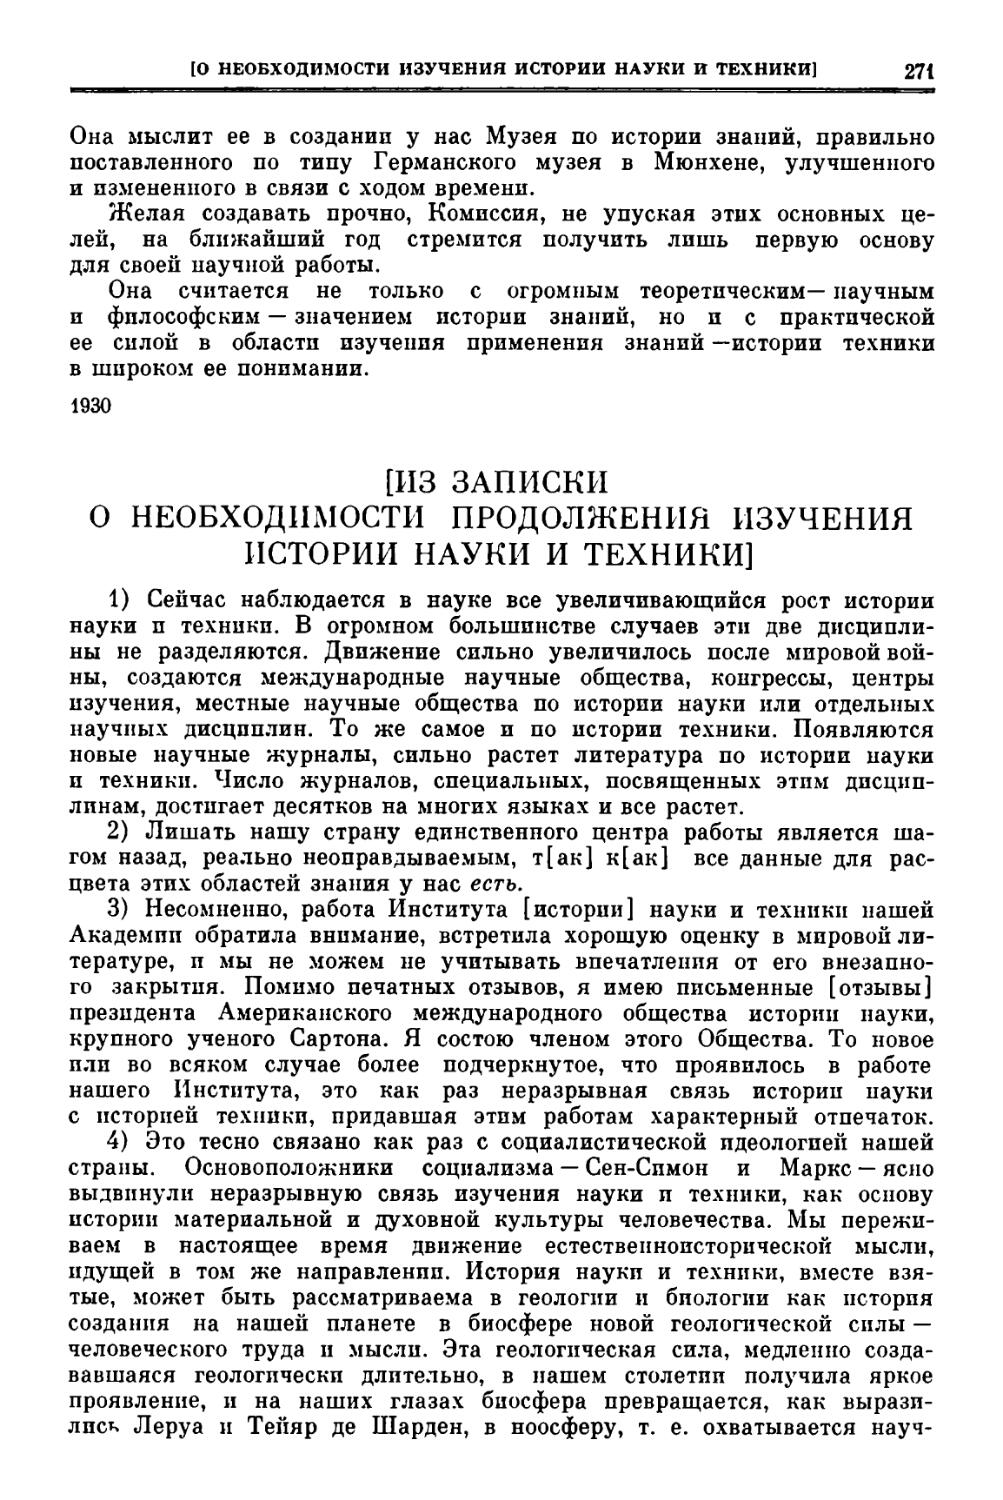 Соображения об организации работы по истории техники и естествознания в системе Академии наук СССР